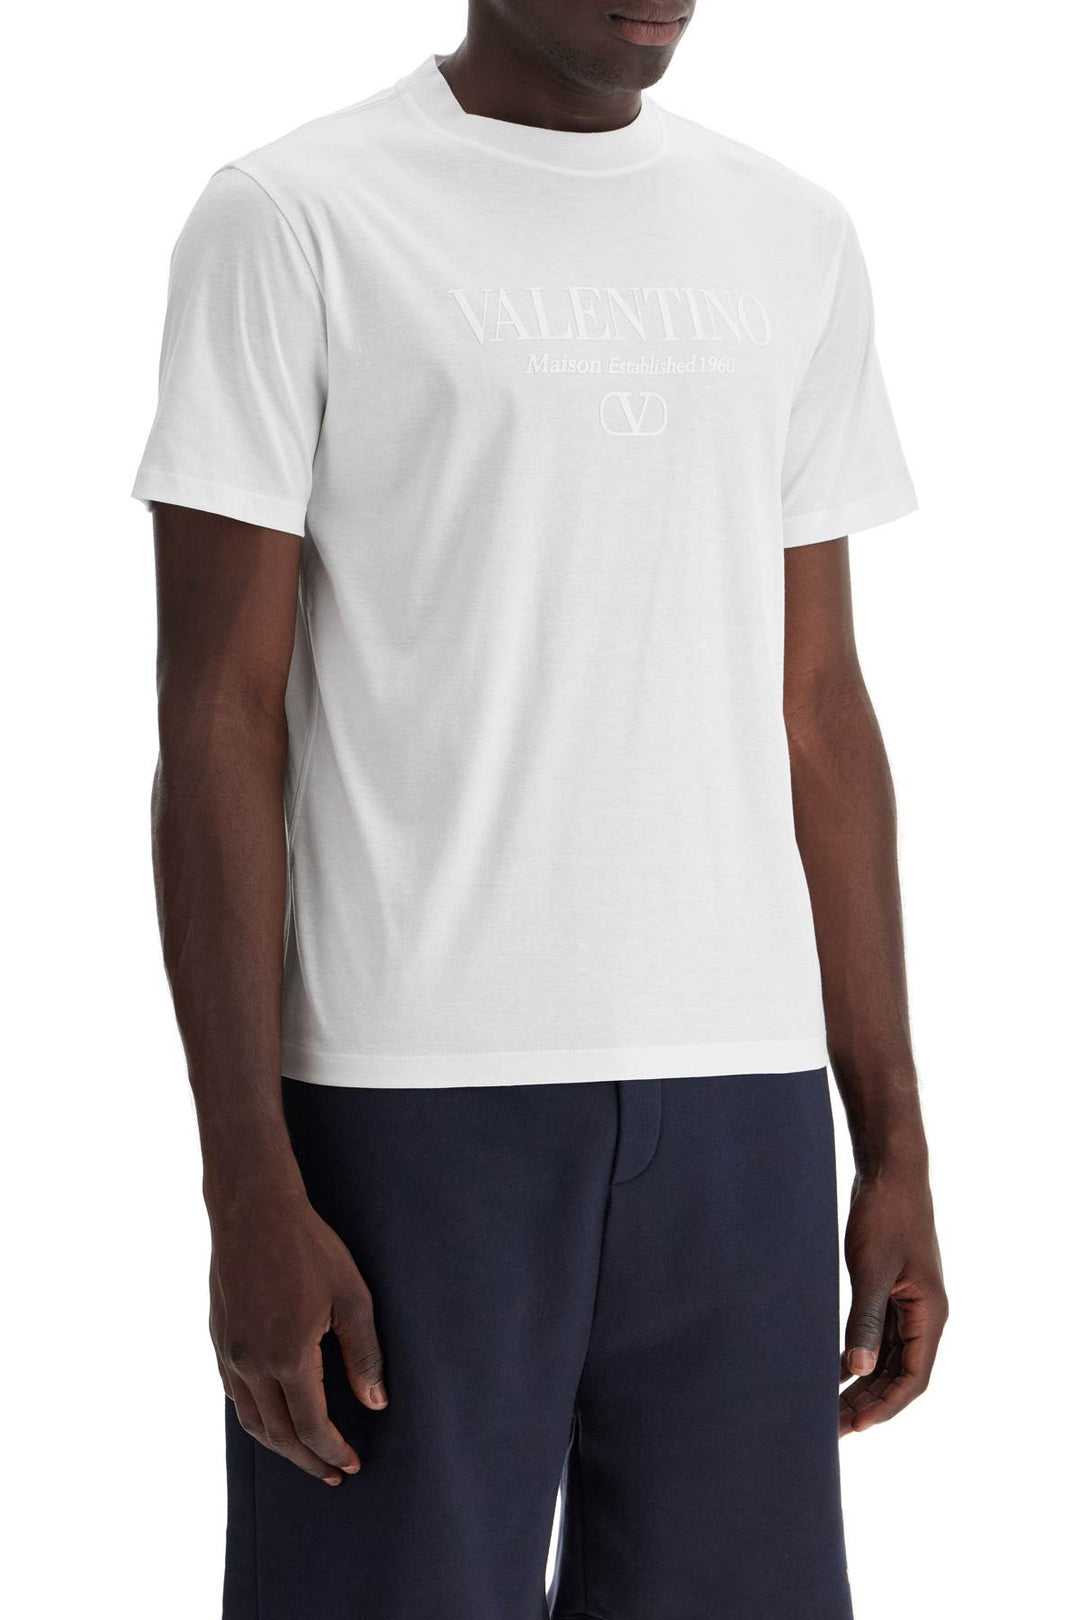 Valentino Garavani T Shirt With Logo Print   White